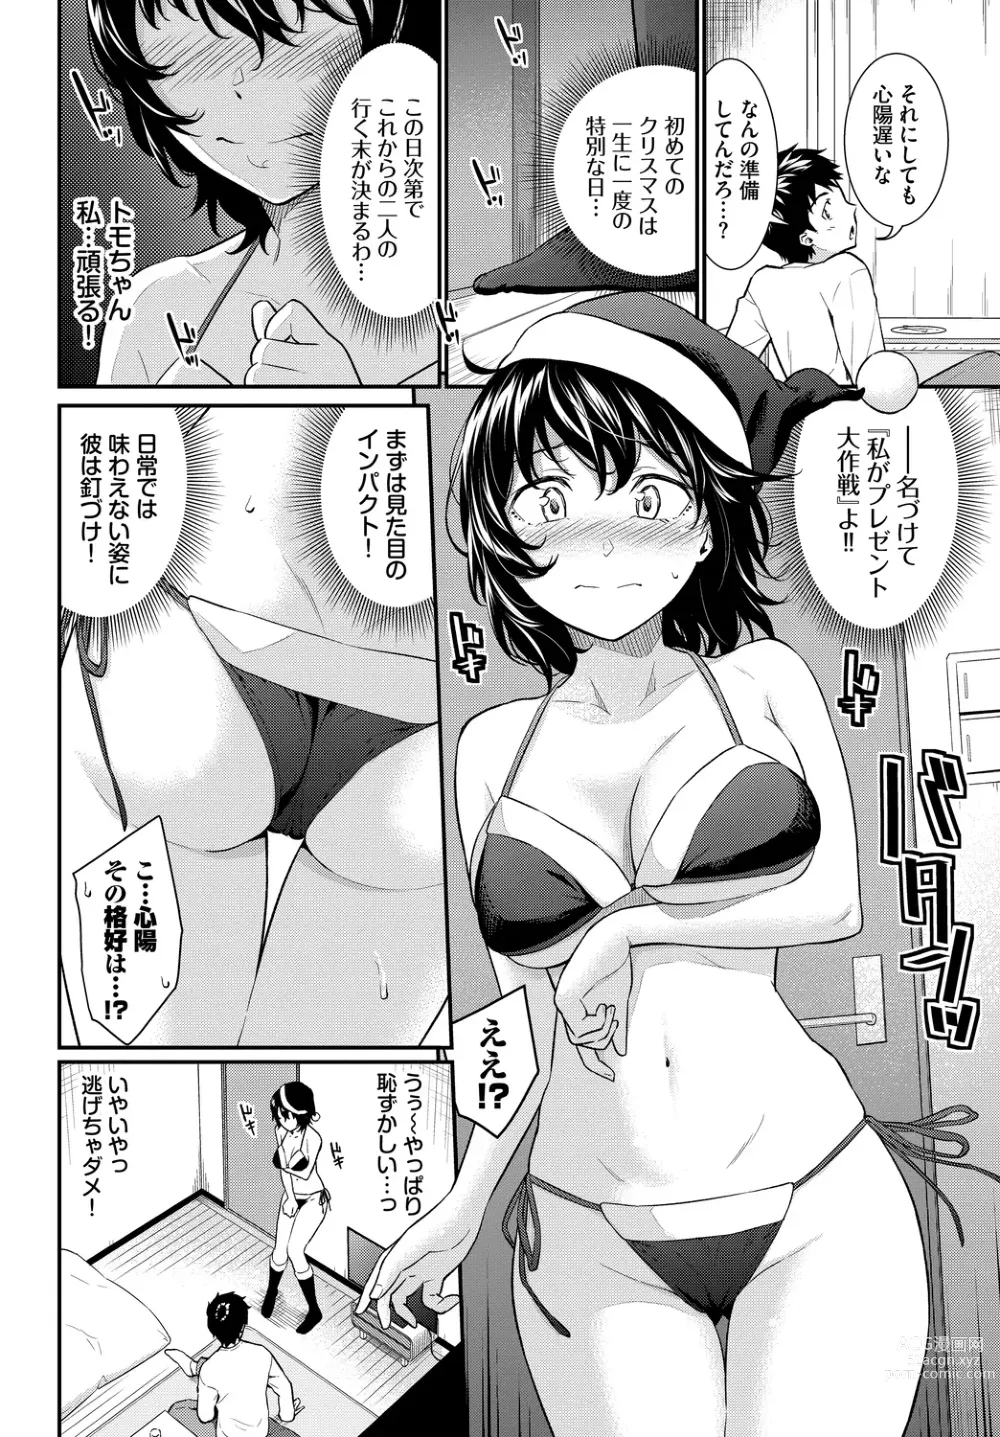 Page 194 of manga Hajirai Limit